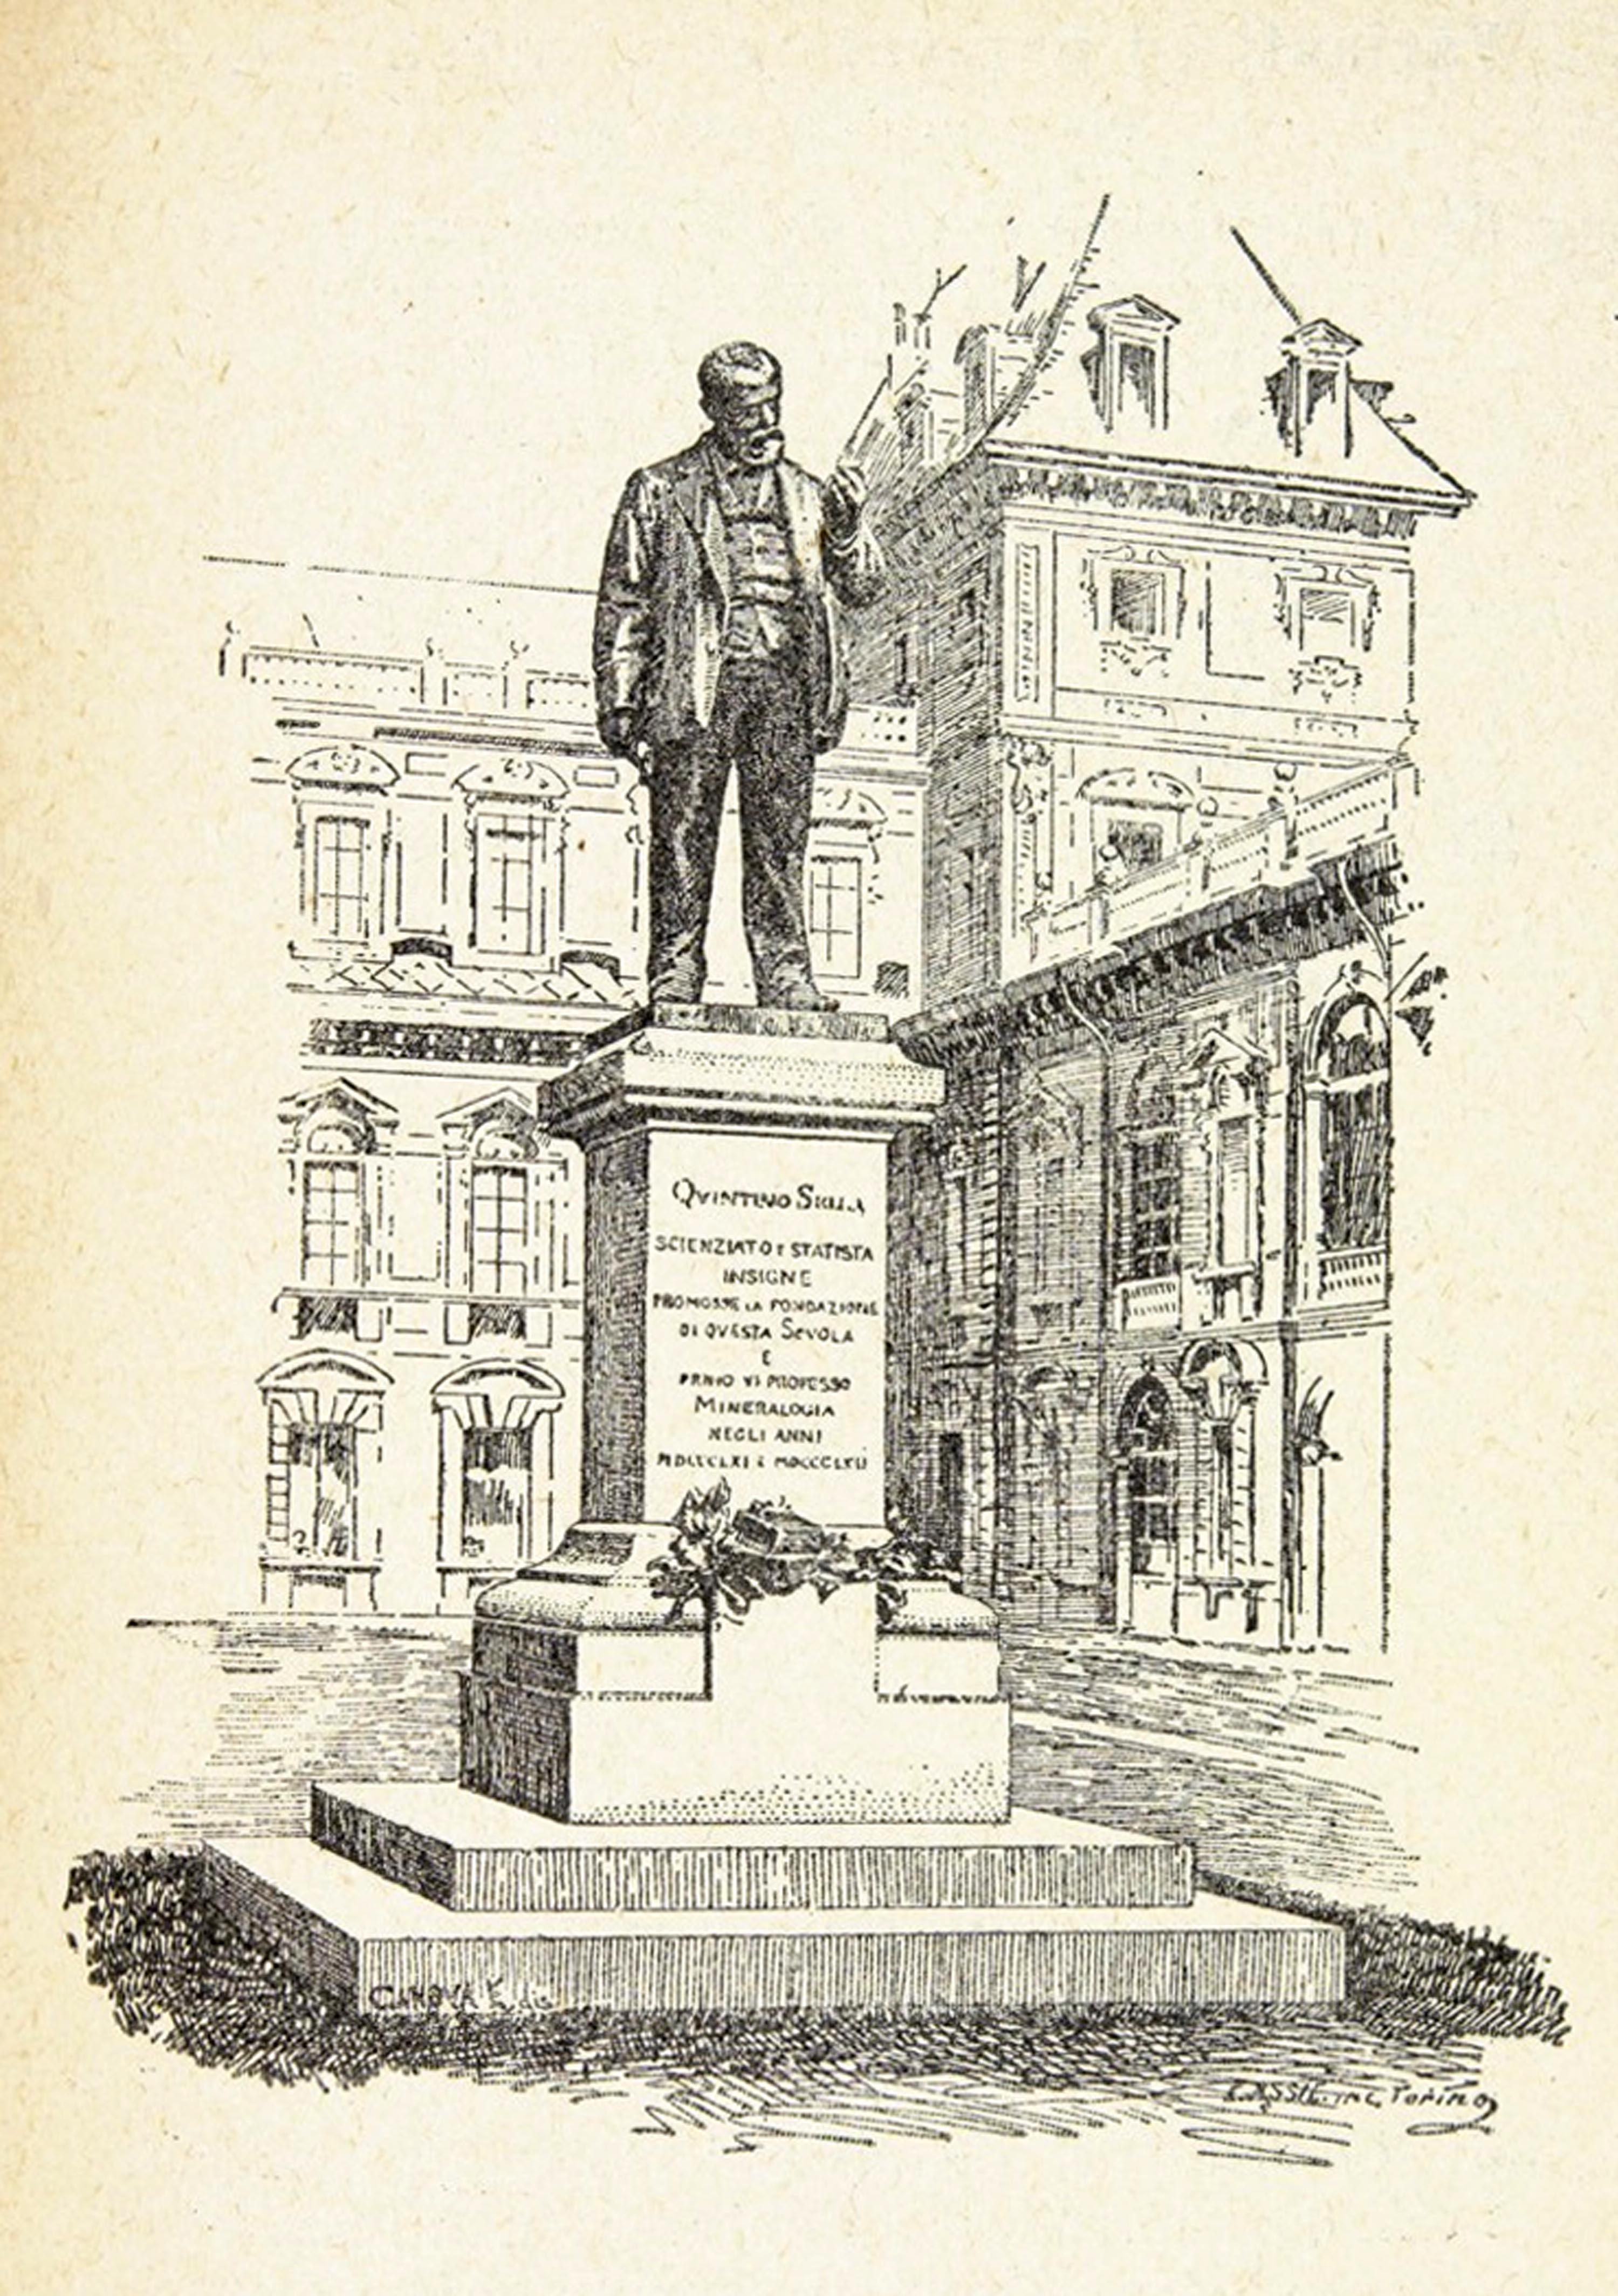 Il monumento a Quintino Sella al castello del Valentino a Torino in una xilografia di fine Ottocento.